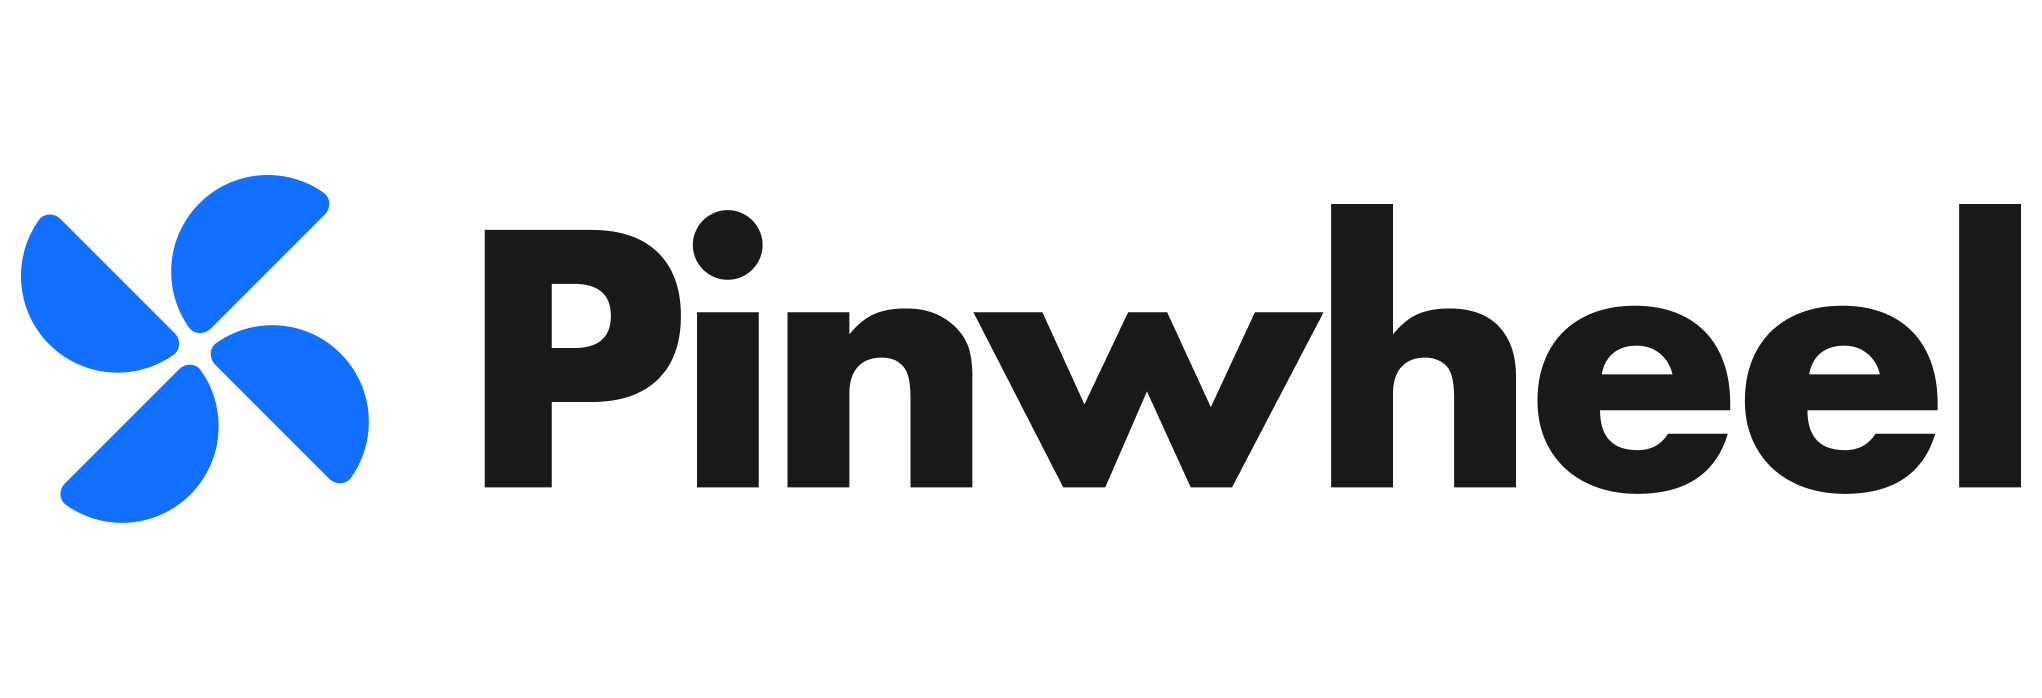 Pinwheel logo